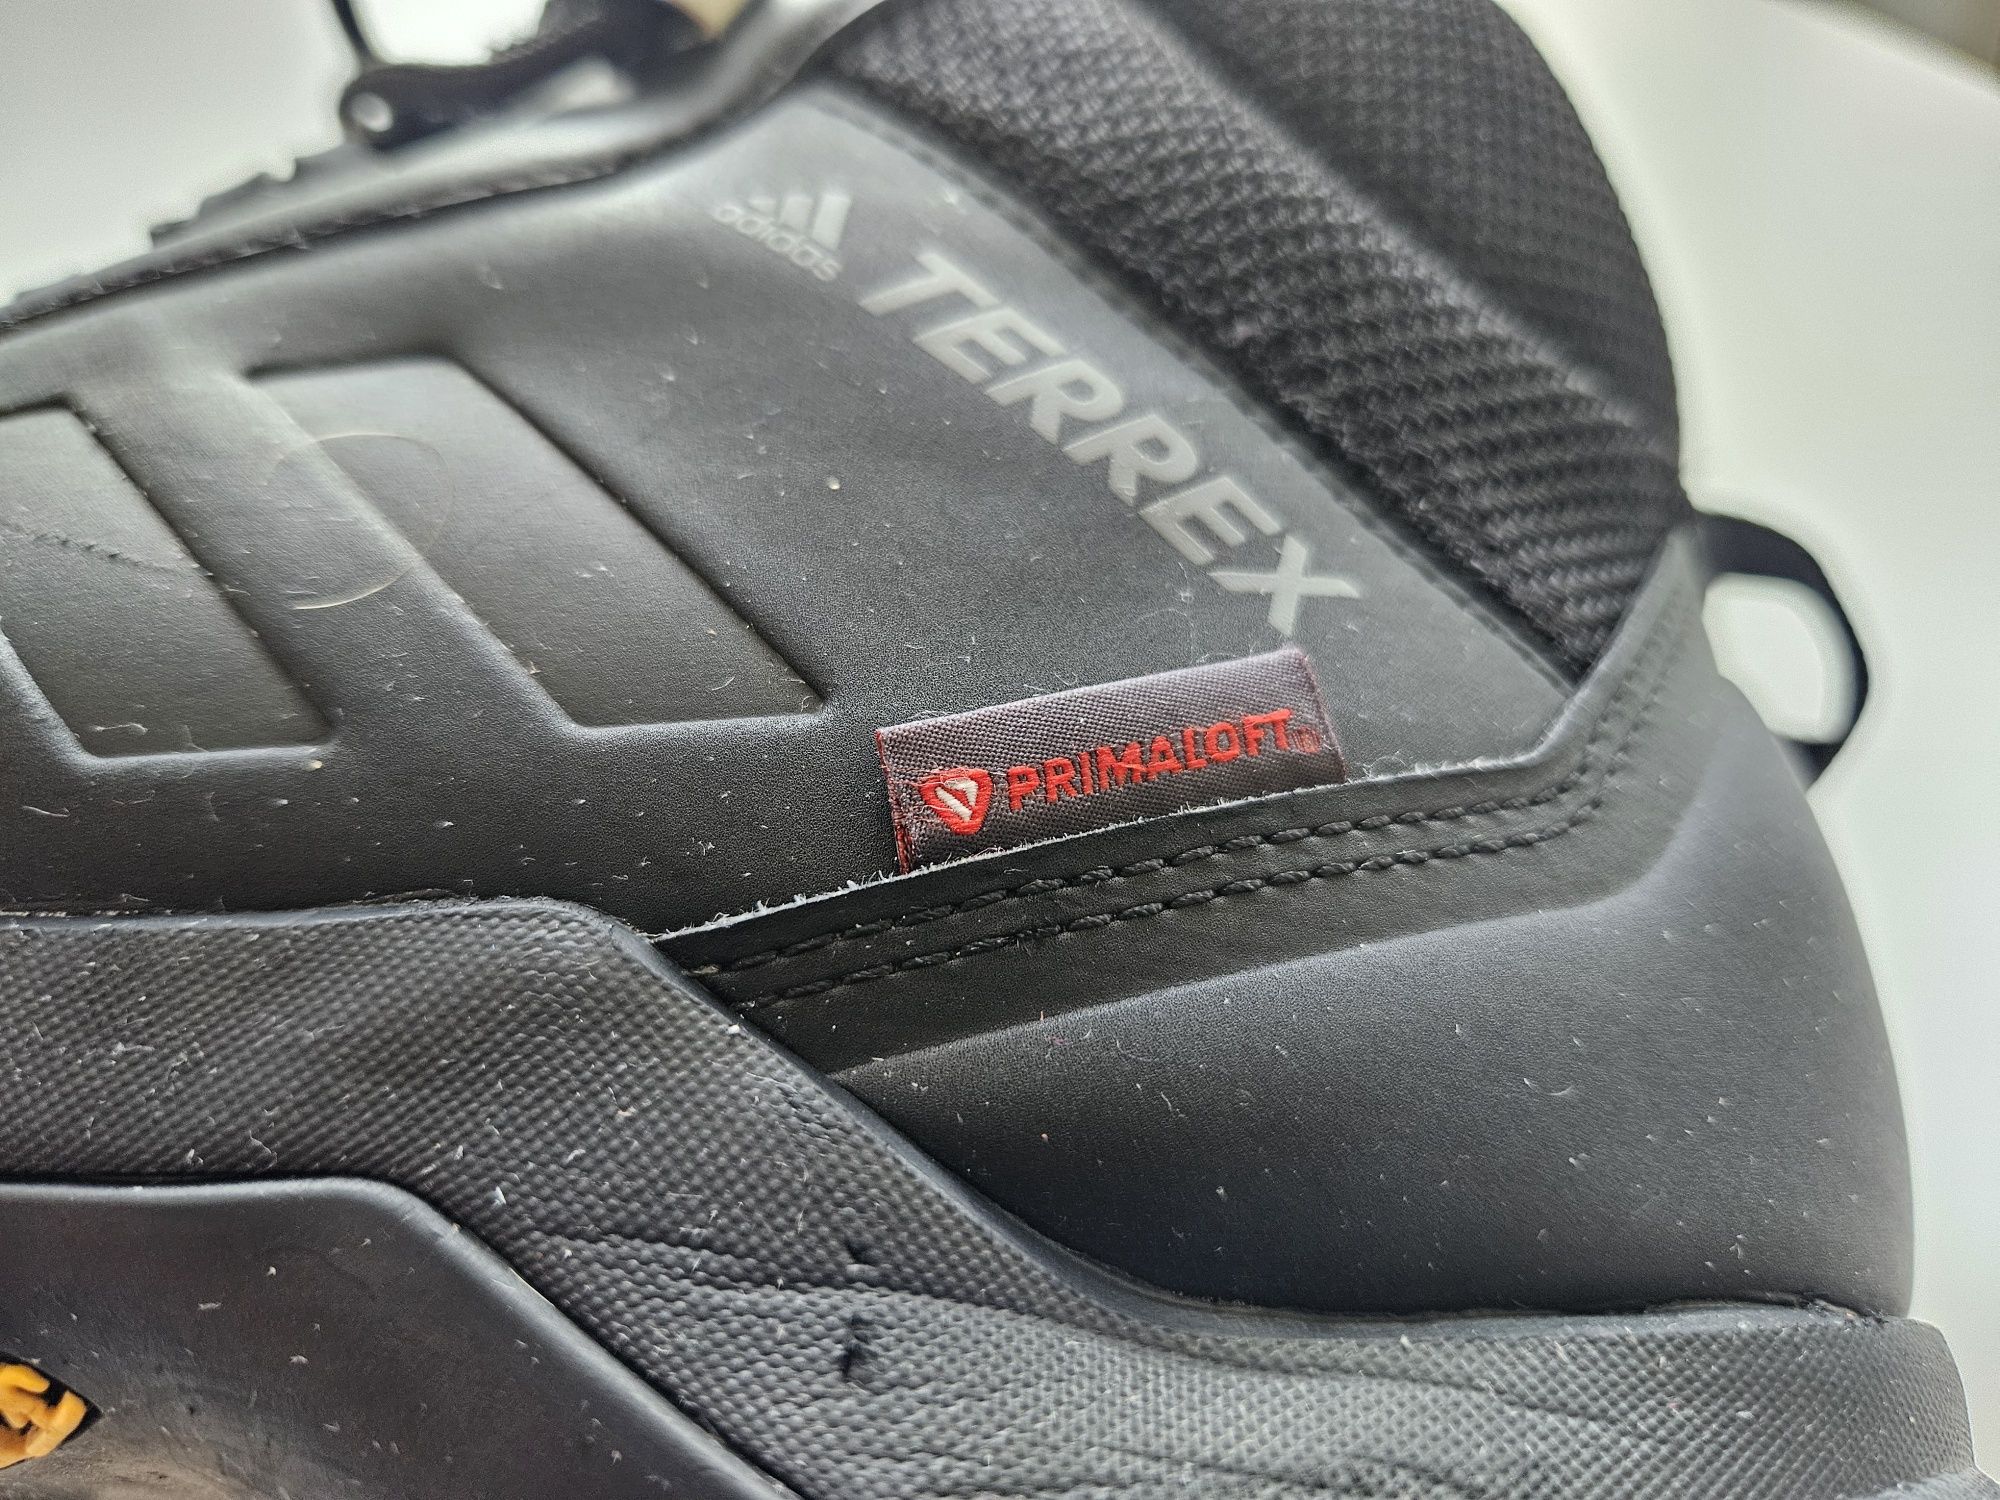 Adidas buty trekkingowe męskie DQX39 rozmiar 45 1/3